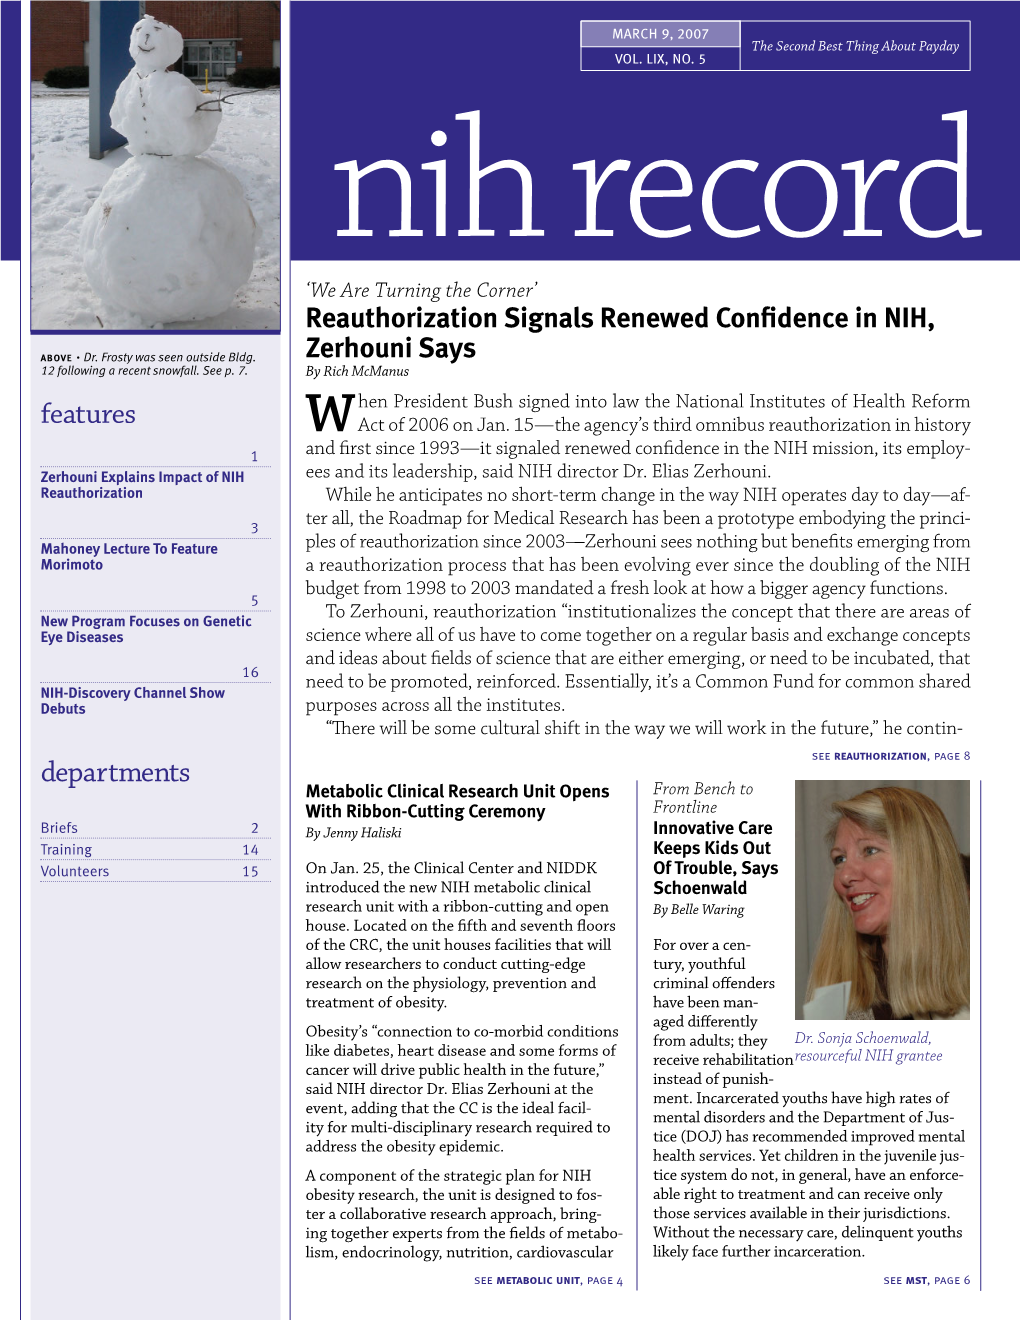 March 9, 2007, NIH Record, Vol. LIX, No. 5